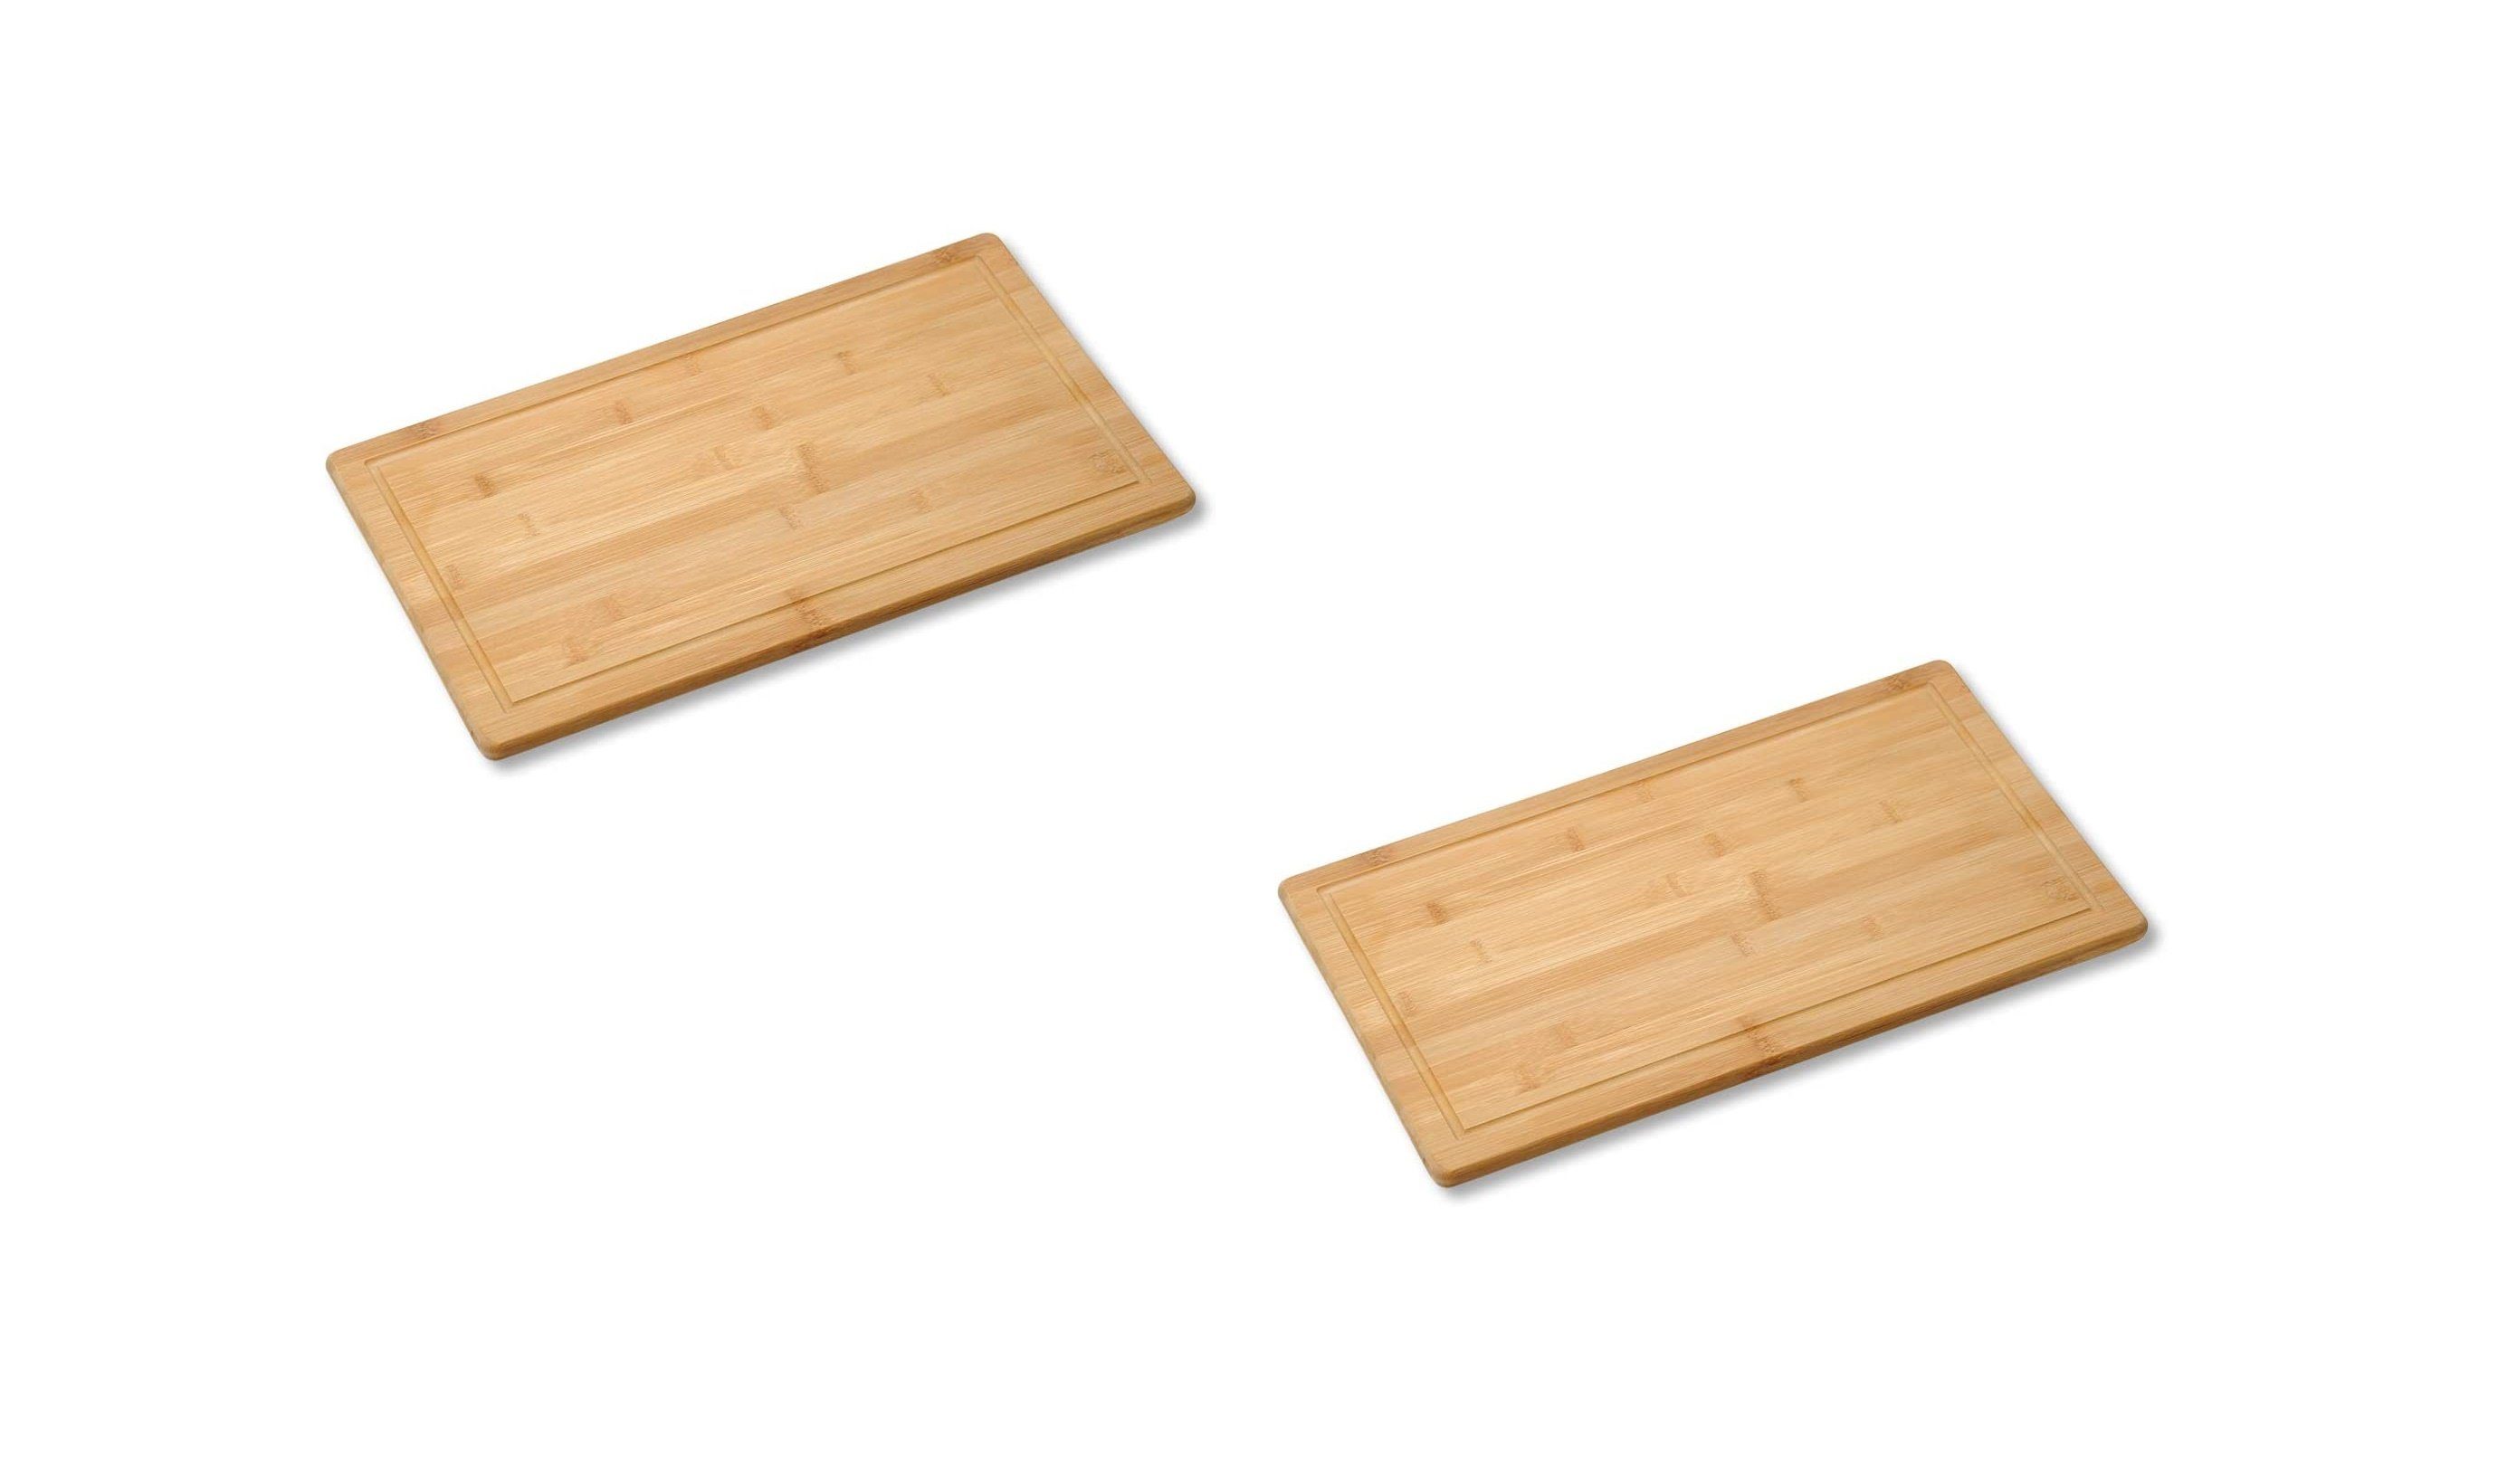 Neustanlo Schneide- und Abdeckplatte 2 Stück Schneide- und Abdeckplatte Bambusholz Holz 50x28x4 cm braun